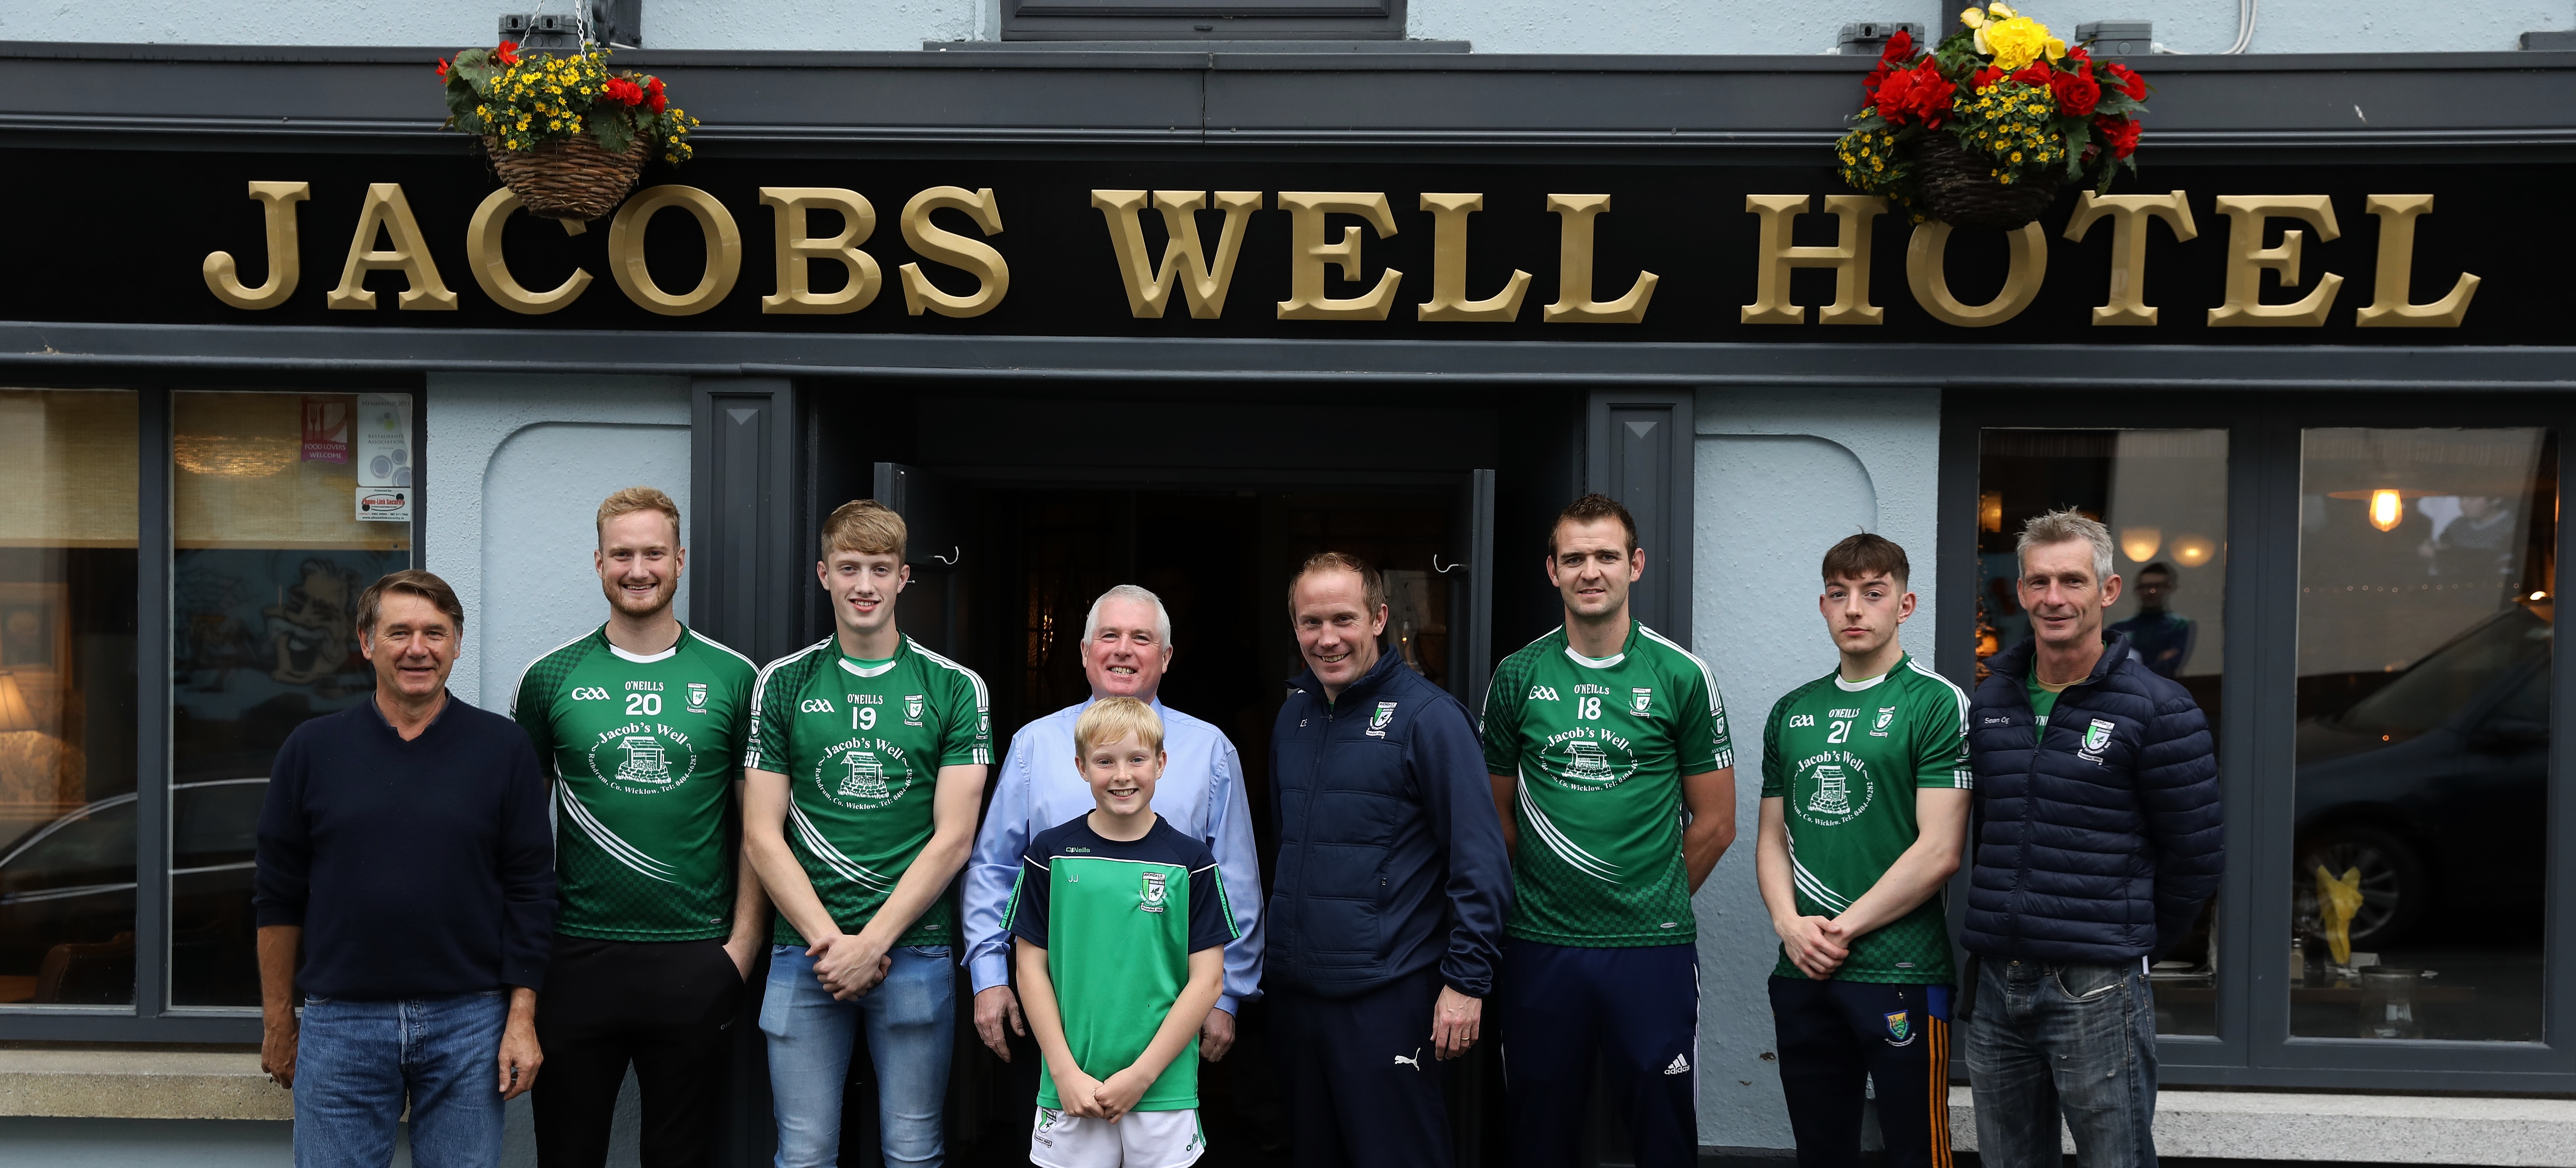 Jacobs Well Hotel renew sponsorship of Avondale GAA Senior Football Team